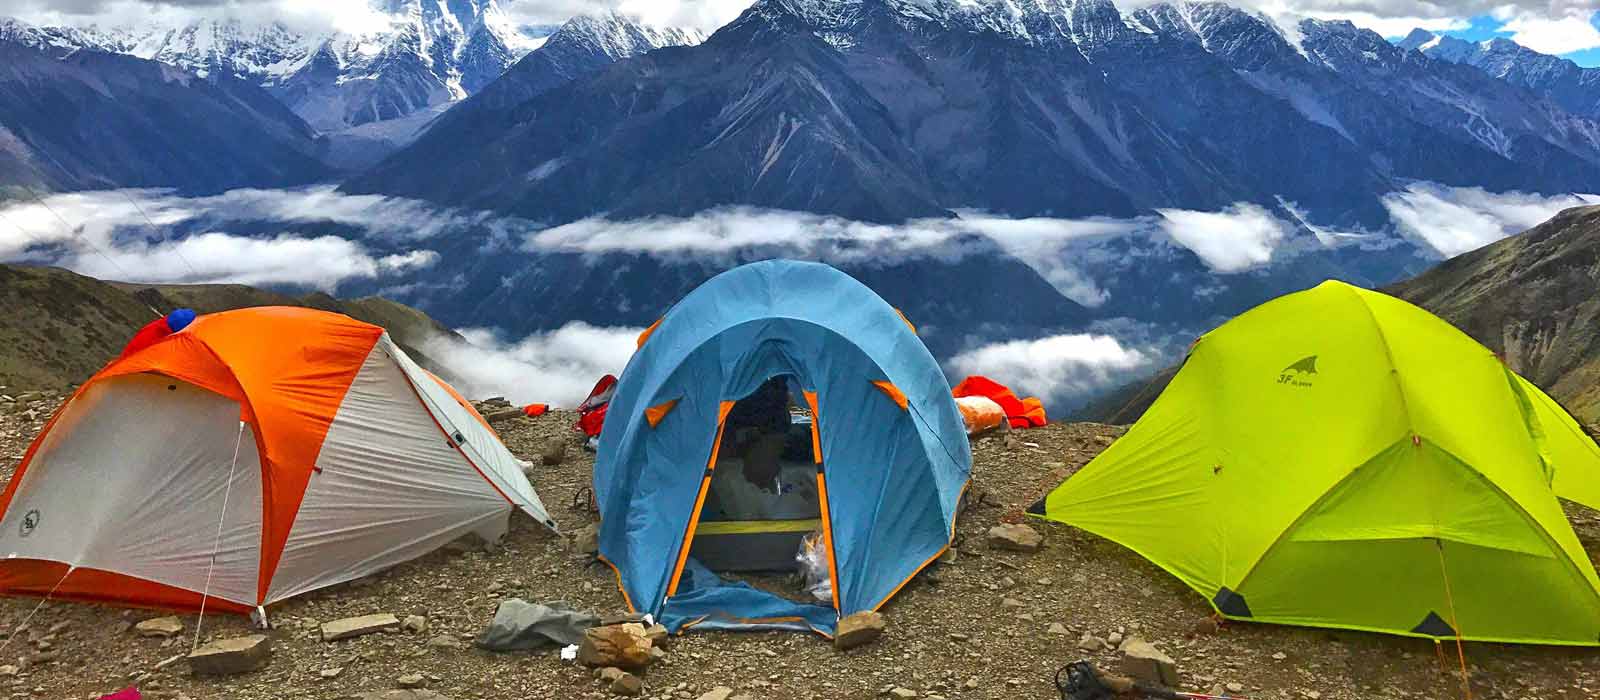 Camping, Uttarakhand, India